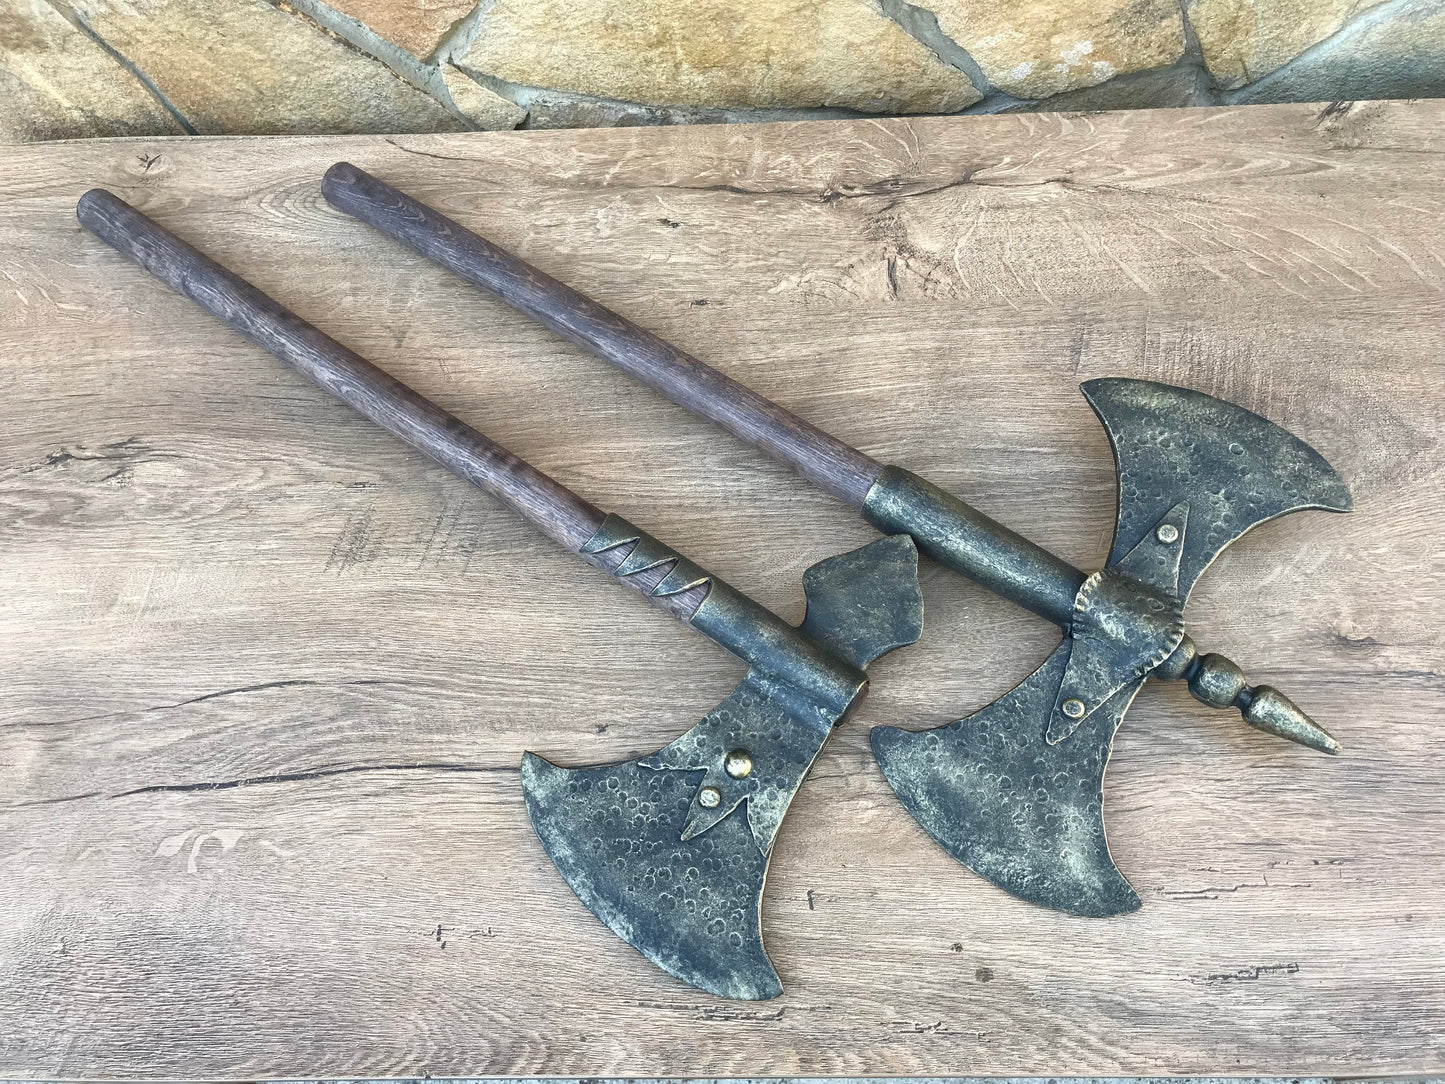 Viking axe, medieval axe, axe, knight, medieval armor, viking armor, viking artifact, warrior armour, medieval viking, warrior axe, LARP,SCA